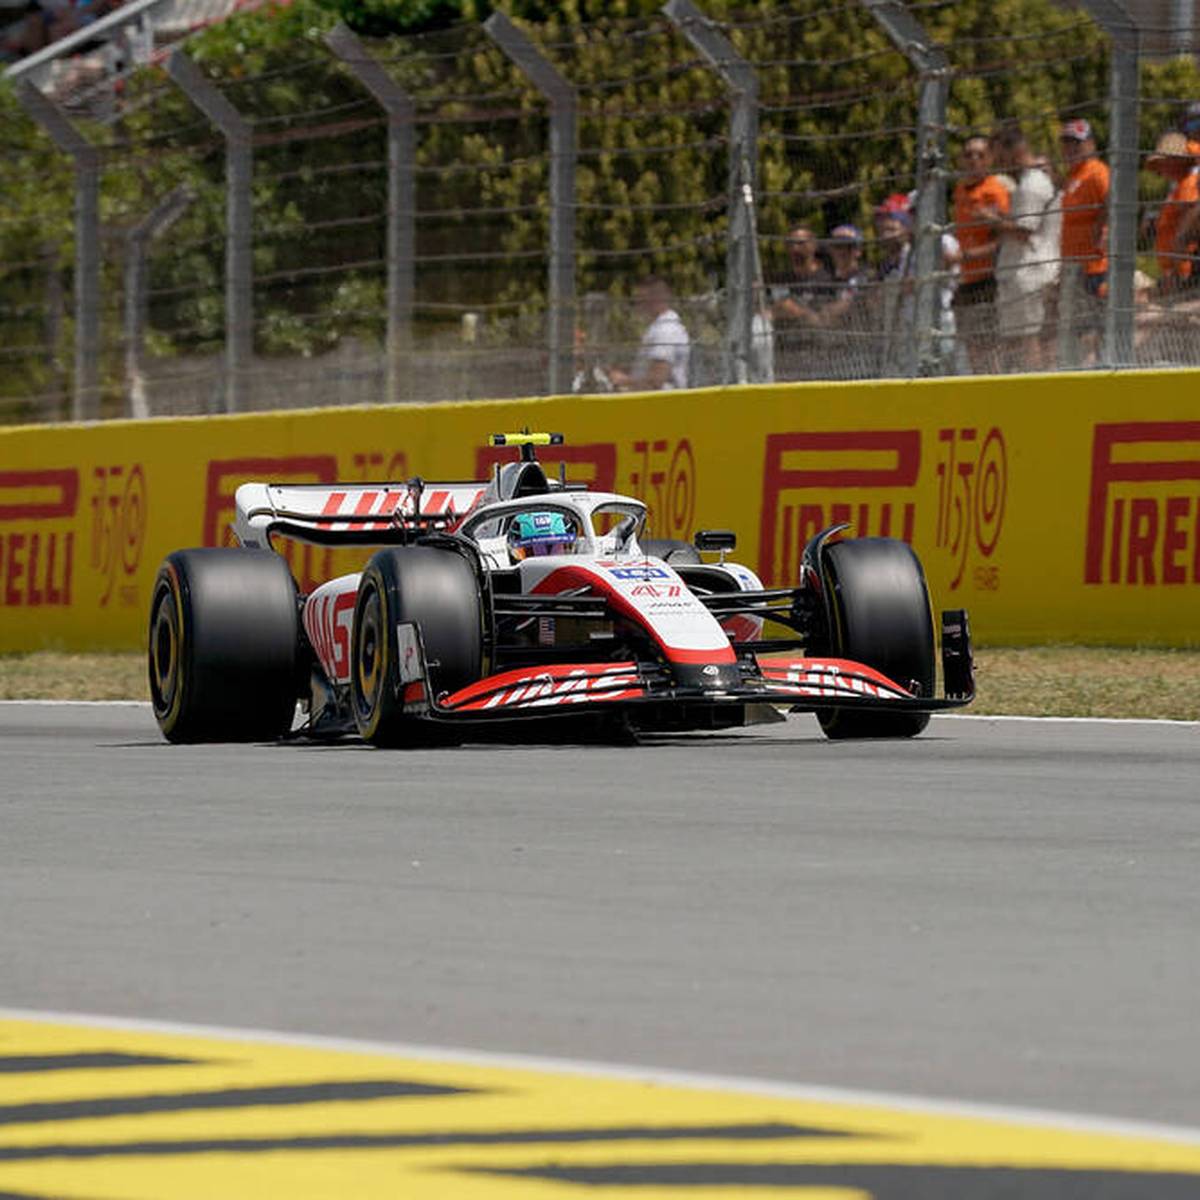 Charles Leclerc schnappt Max Verstappen beim Qualifying in Barcelona die Pole weg. Mick Schumacher landet eine Bestleistung.